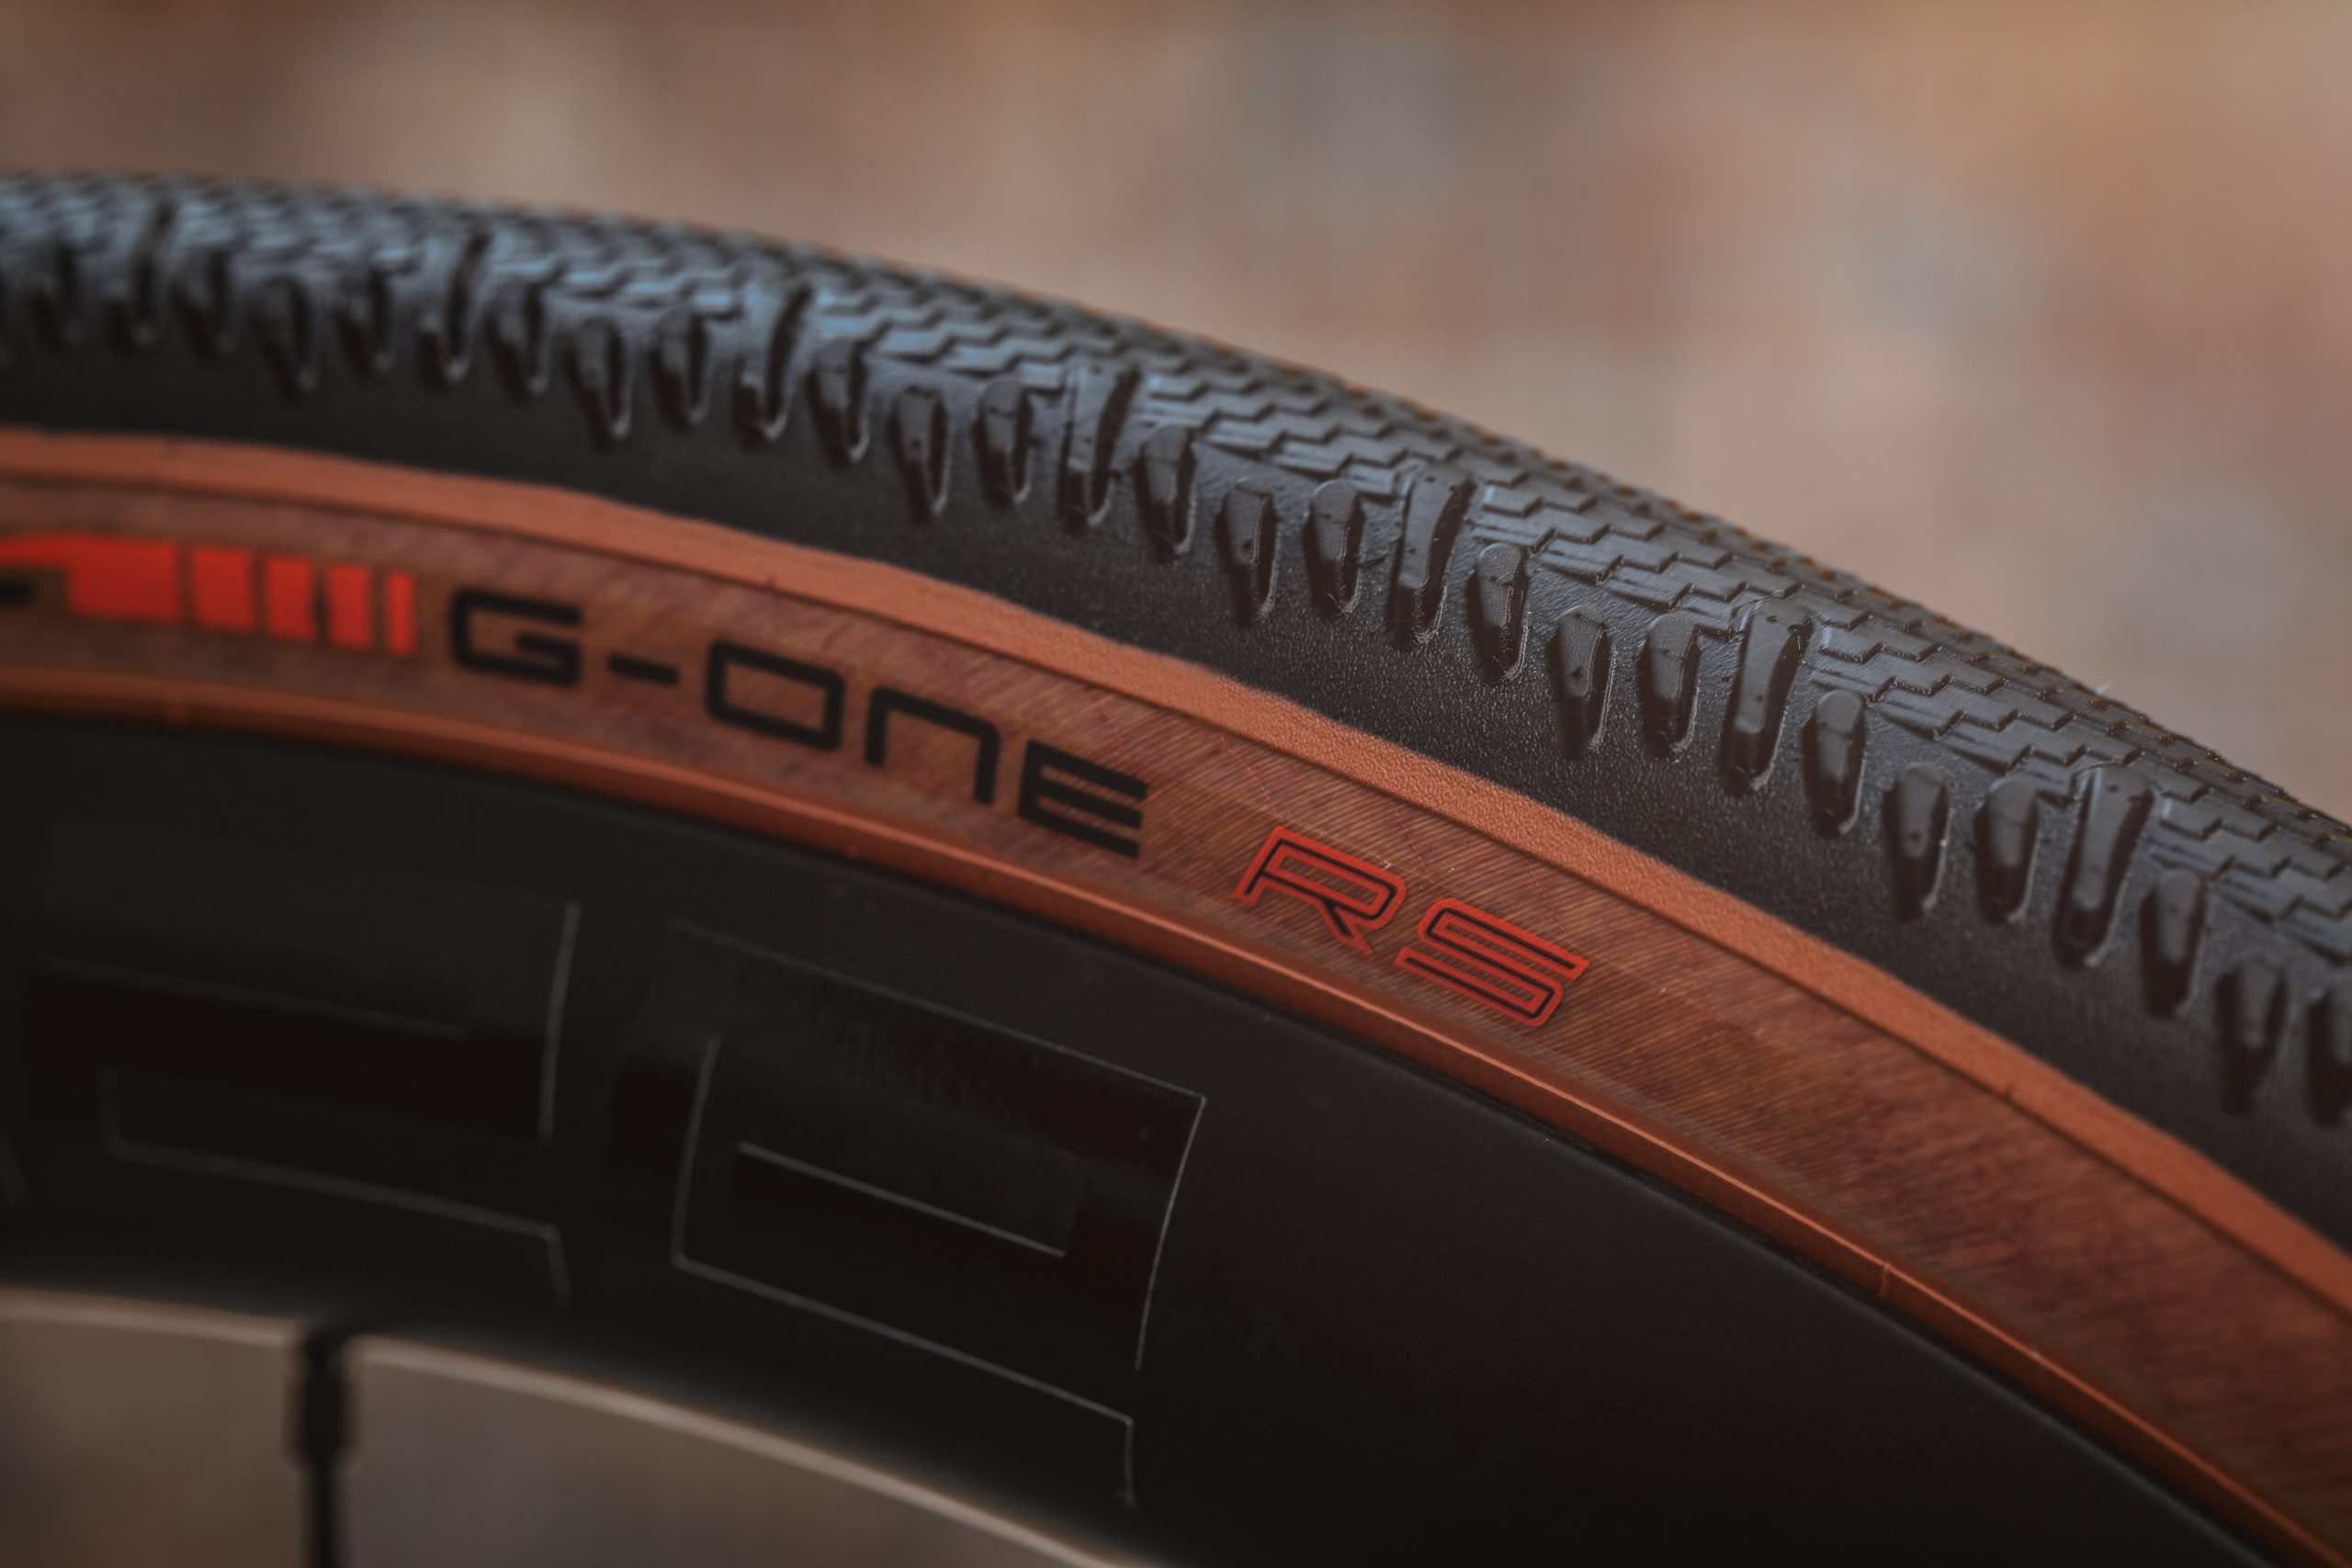 Schwalbe presenta il nuovo pneumatico Gravel da competizione: G-ONE RS